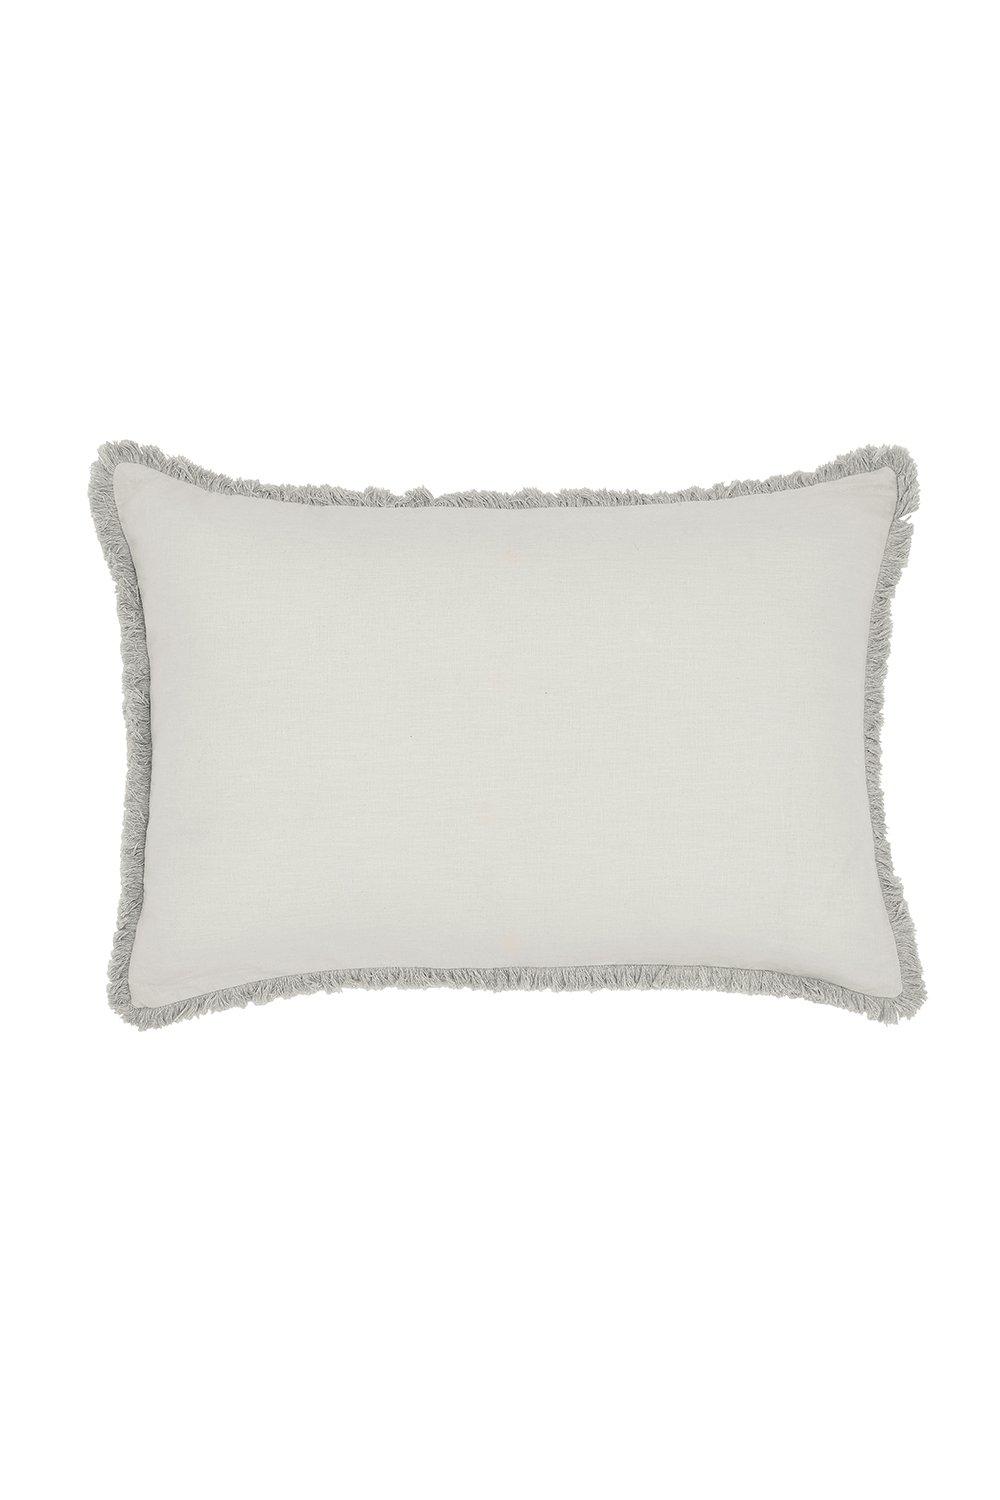 'Pure Linen Cotton' Cushion 60x40cm